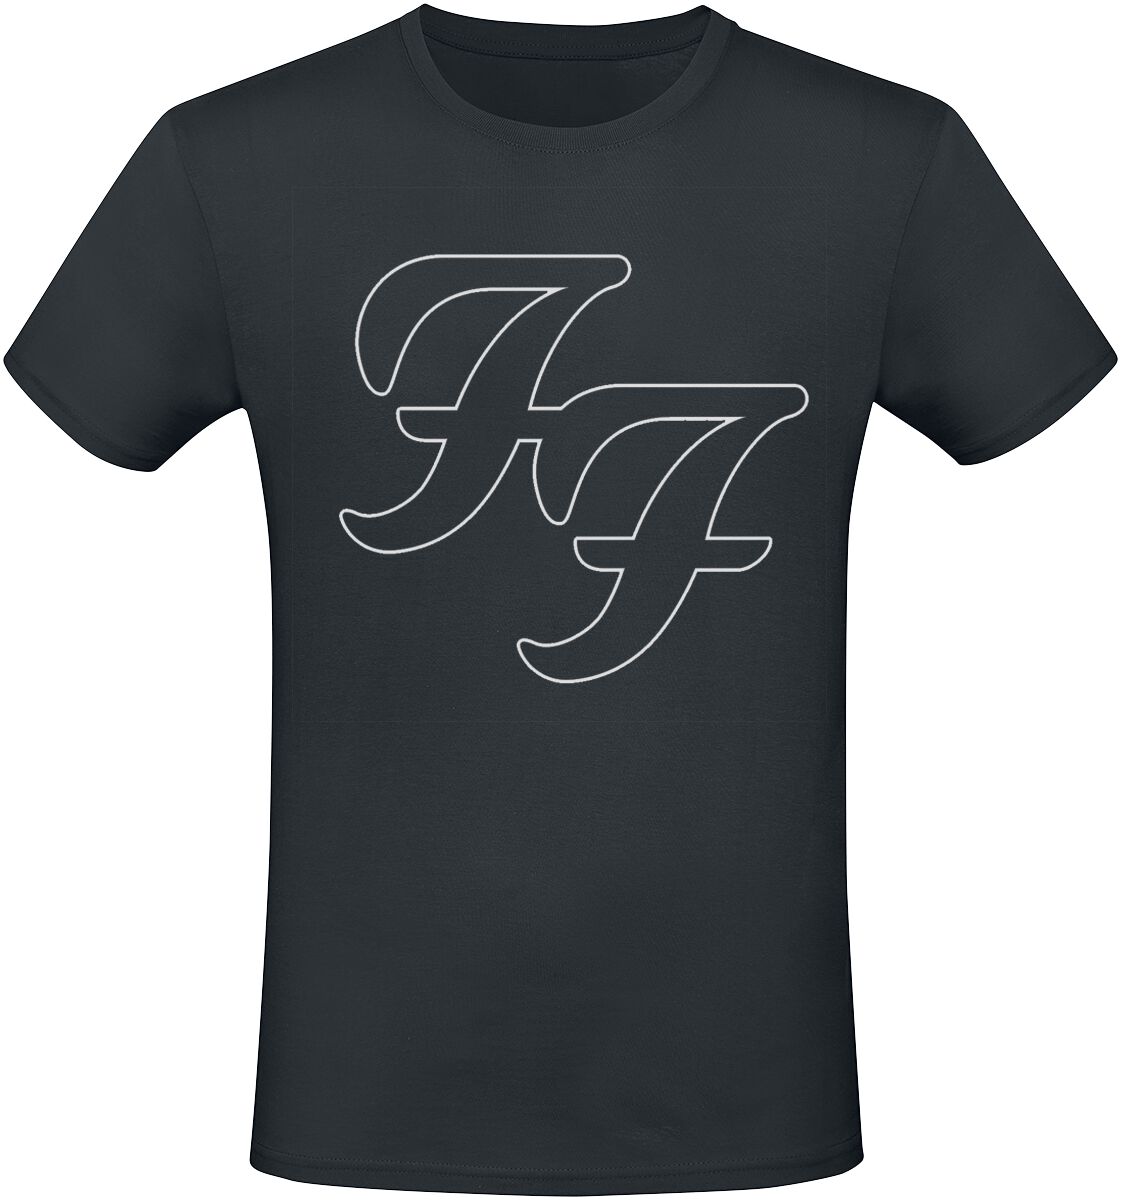 Foo Fighters T-Shirt - But Here We Are - S bis 3XL - für Männer - Größe XXL - schwarz  - Lizenziertes Merchandise!